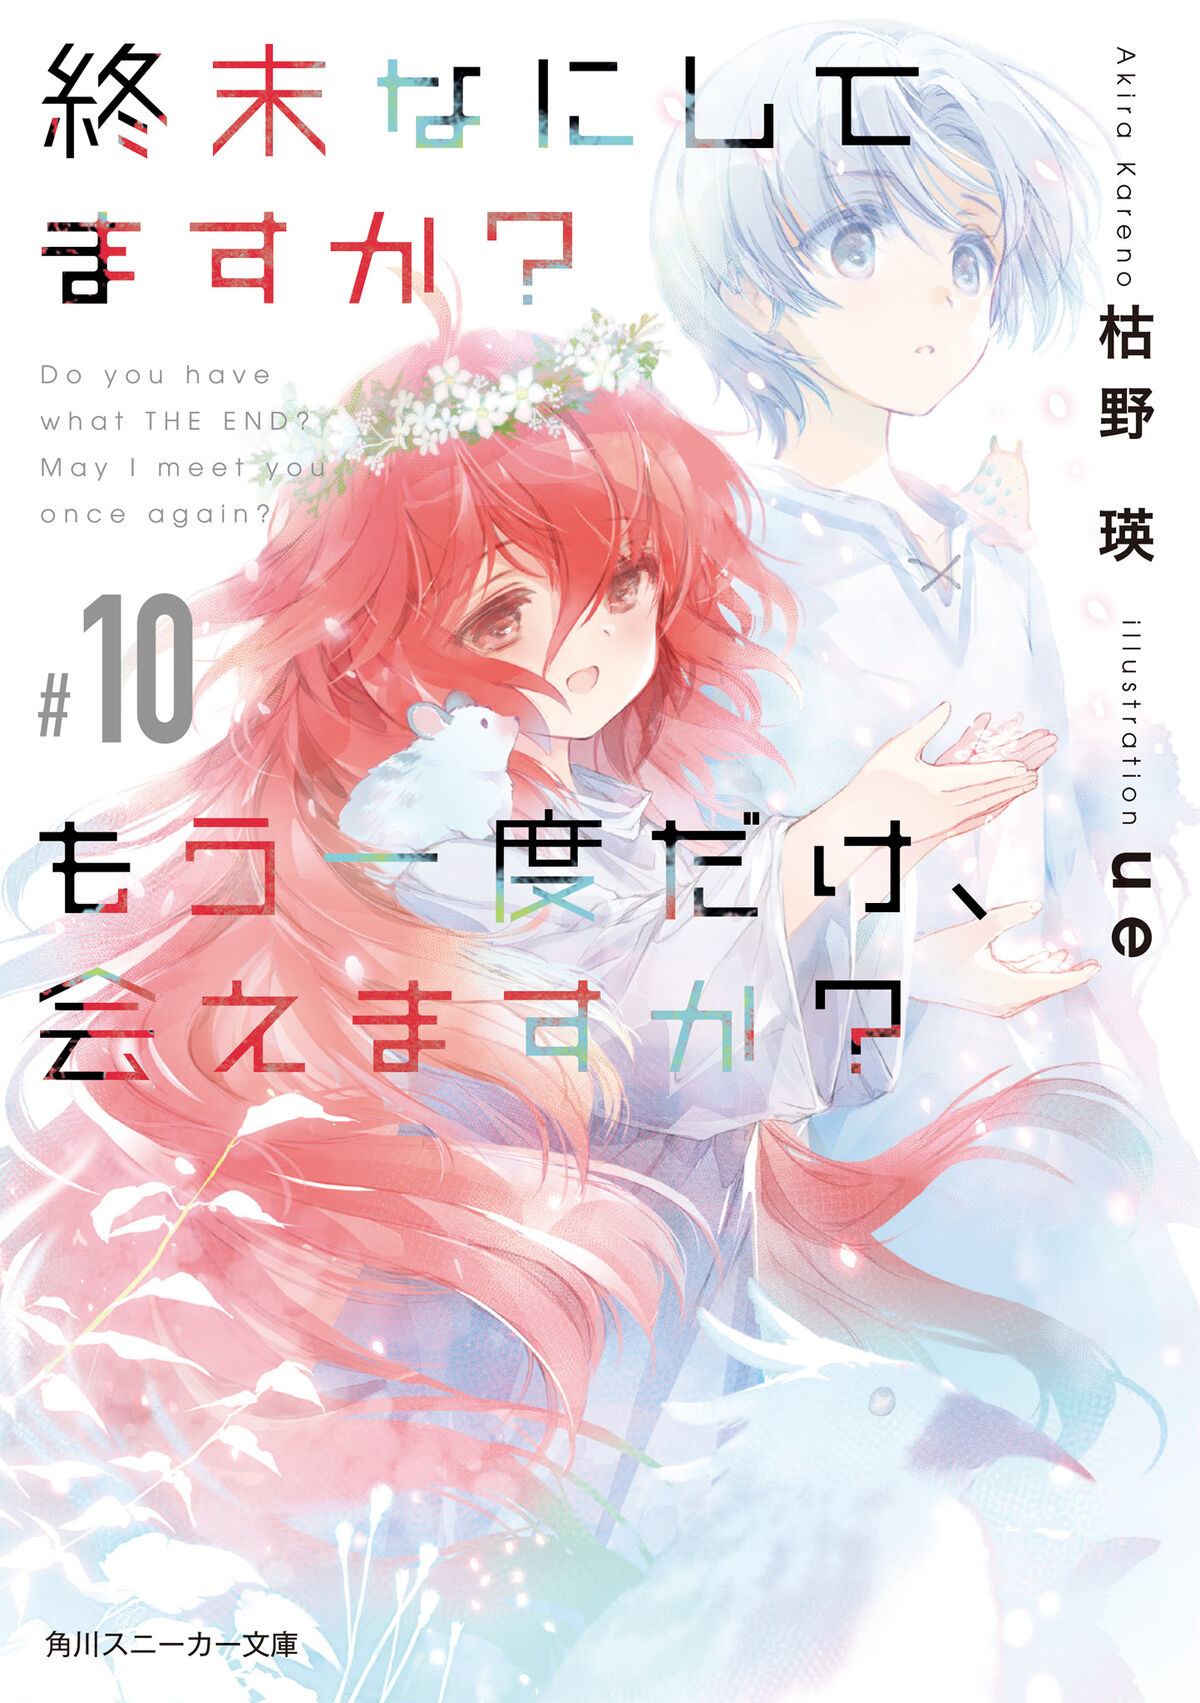 Sōyoku no Busō Tsukai Manga Listed as Ending With 3rd Volume - News - Anime  News Network